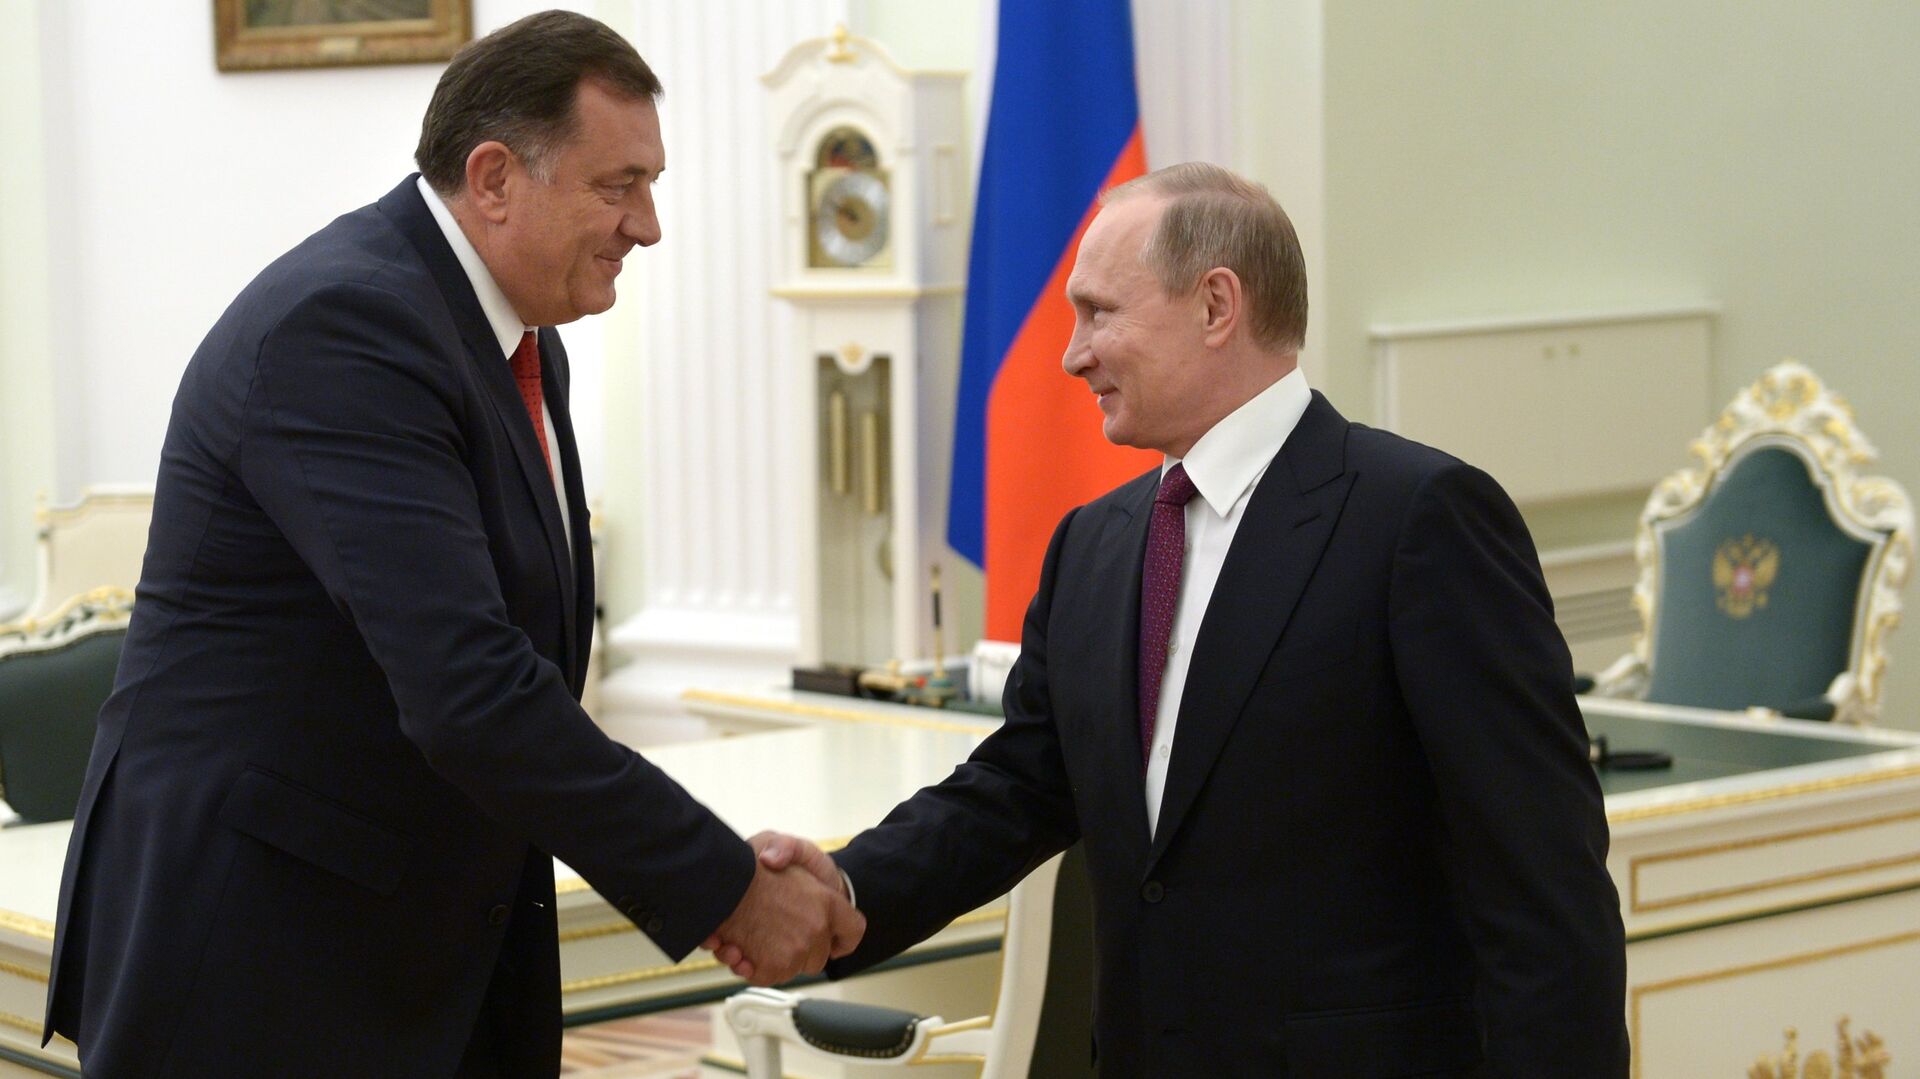 Predsednik Republike Srpske Milorad Dodik i predsednik Rusije Vladimir Putin u Kremlju - Sputnik Srbija, 1920, 20.06.2022